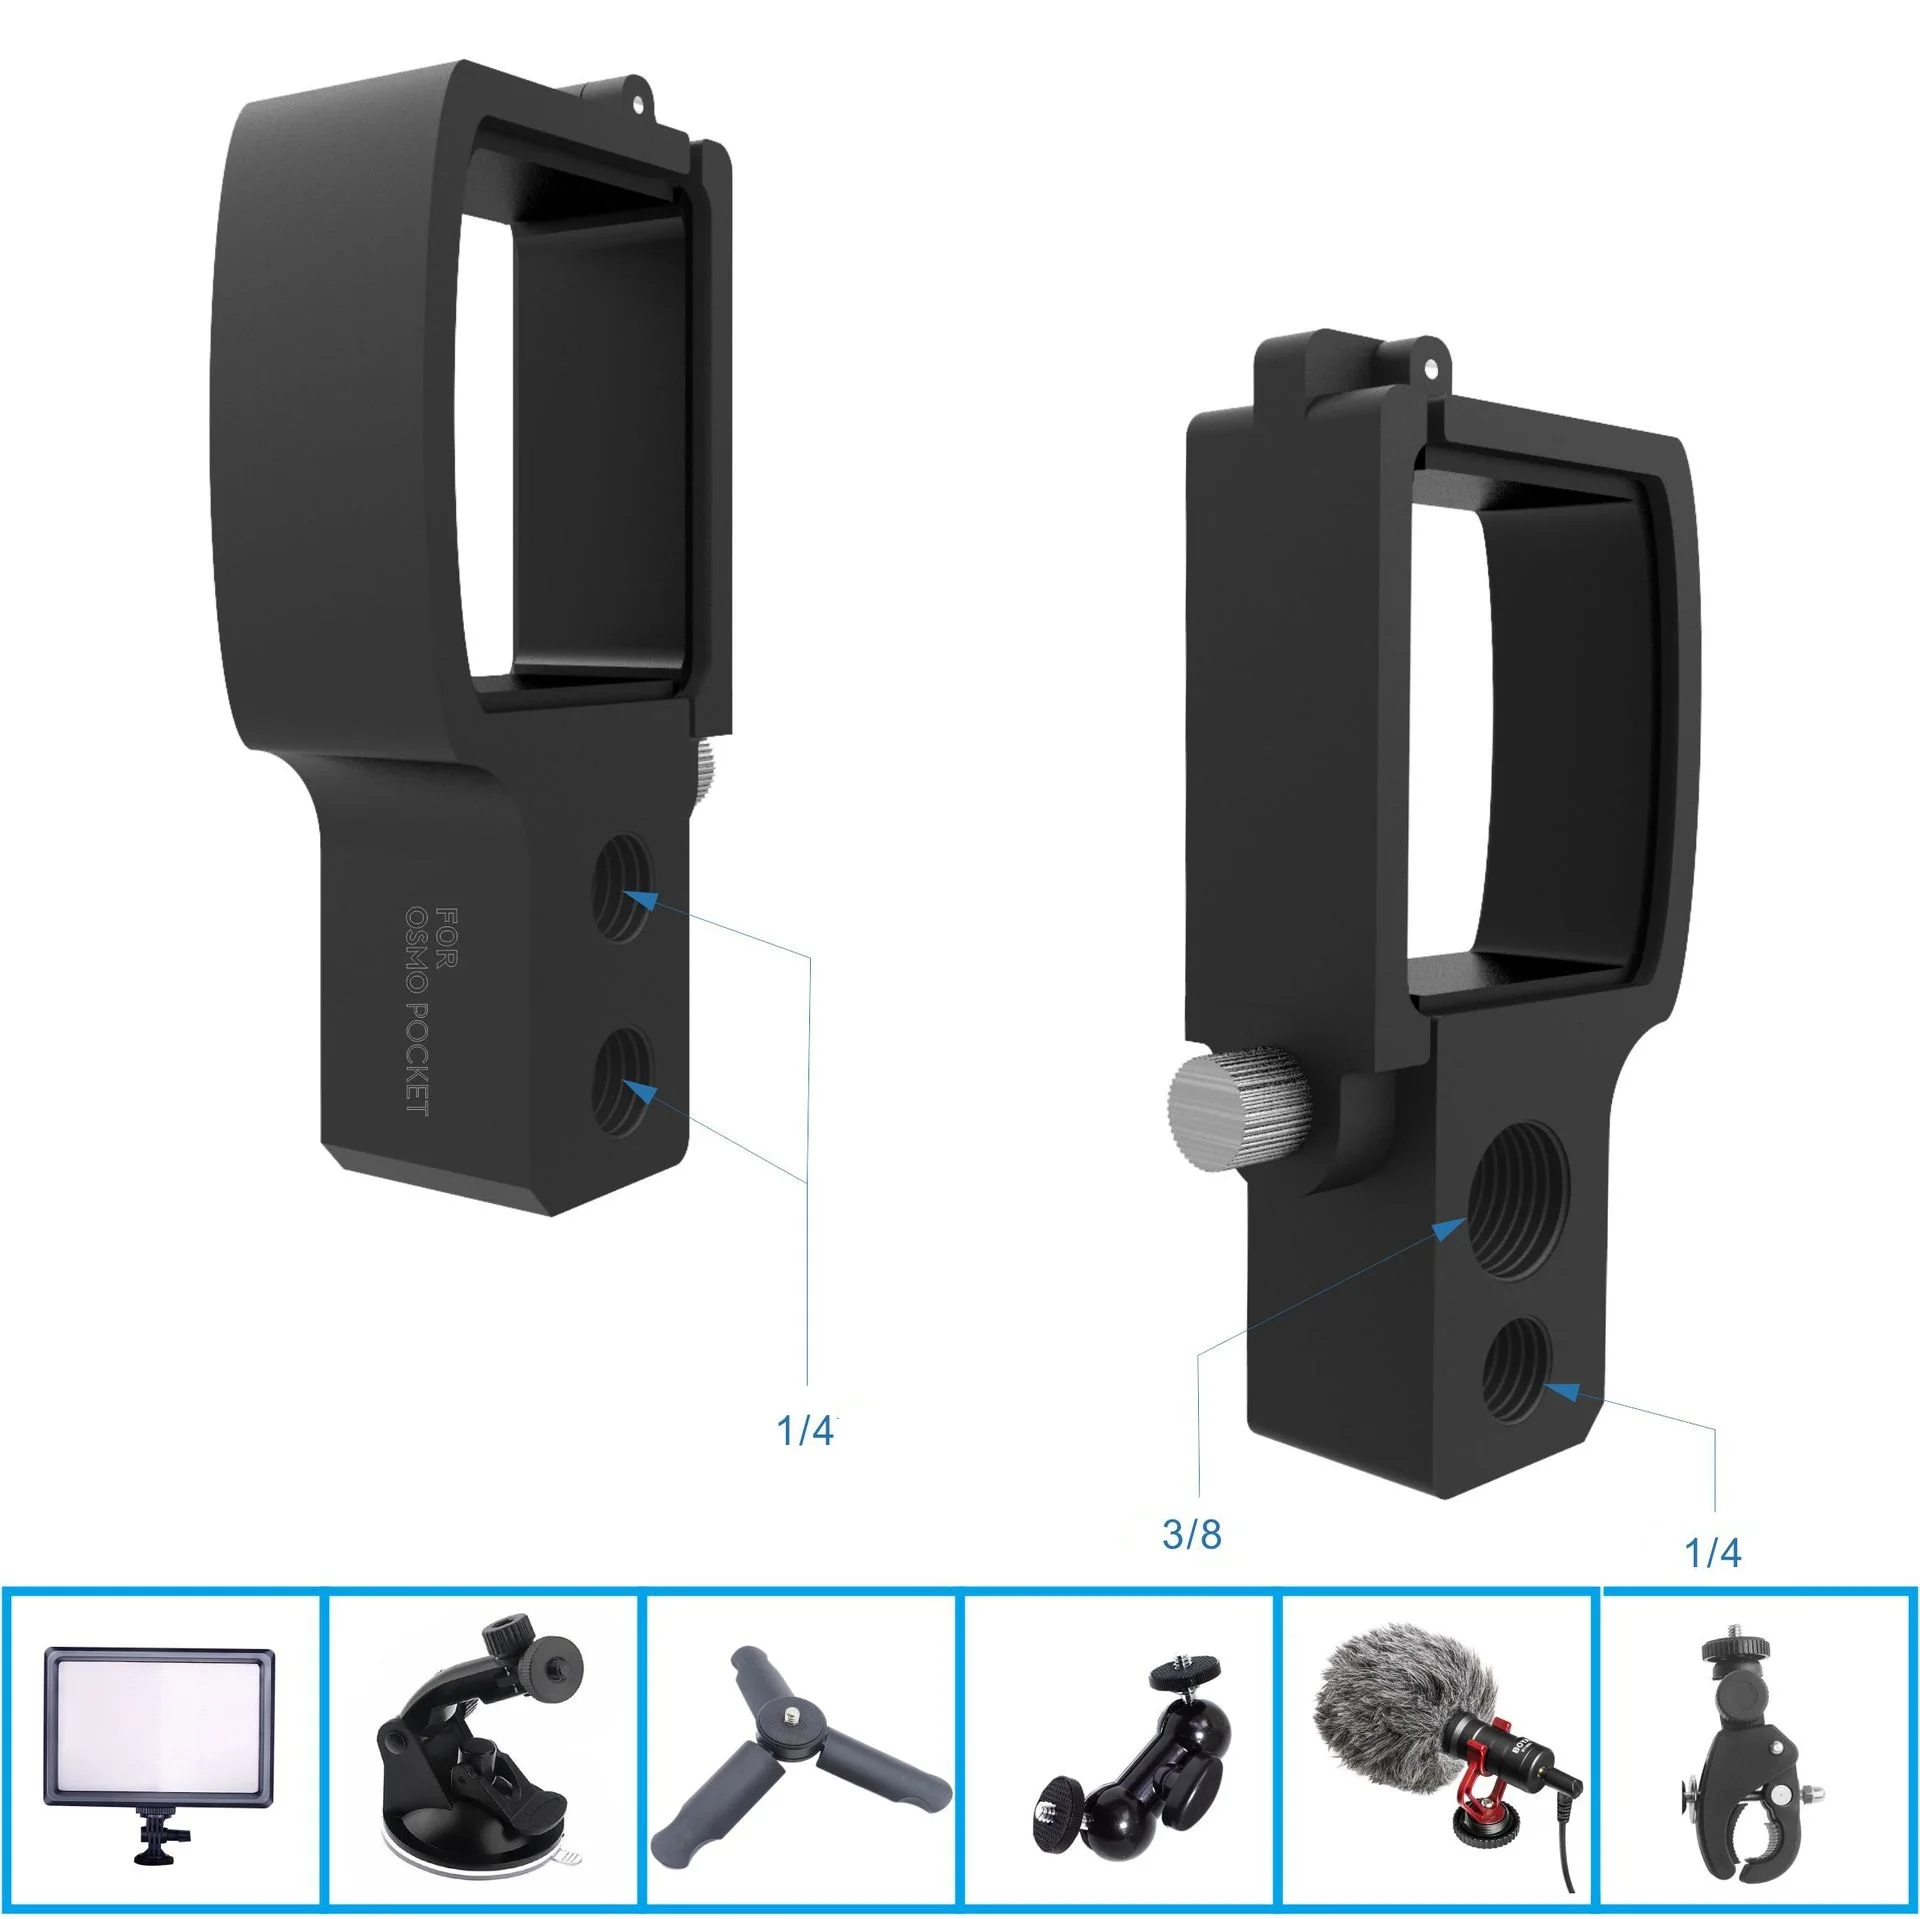 DJI Осмо карман модуль расширения Аксессуары для стабилизаторов фотокамер